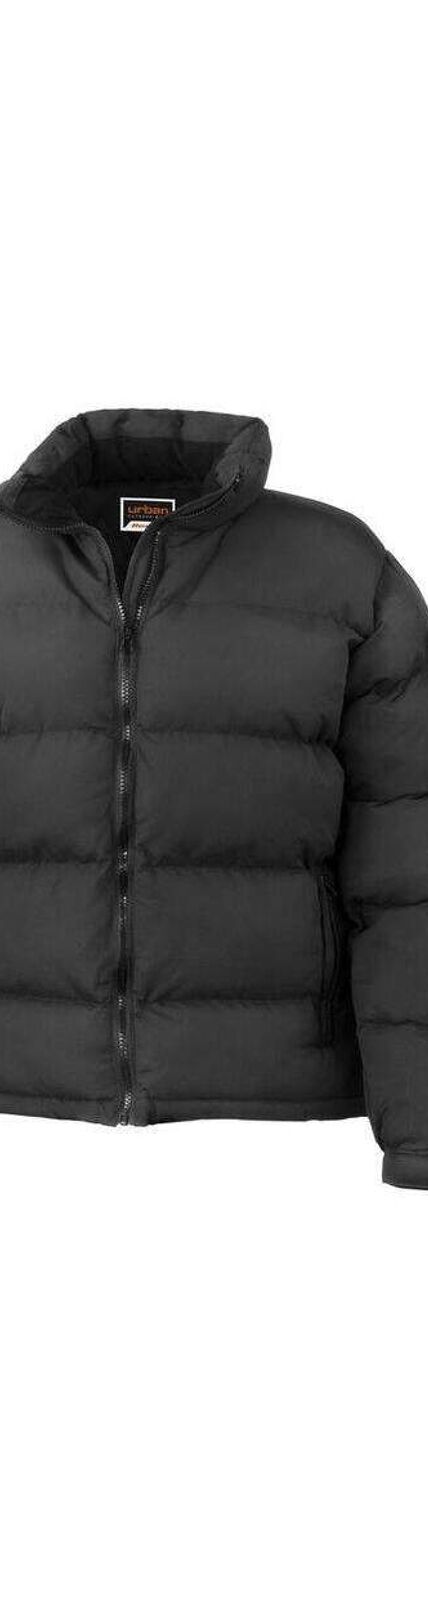 Doudoune manteau d'hiver imperméable léger et chaud FEMME Result